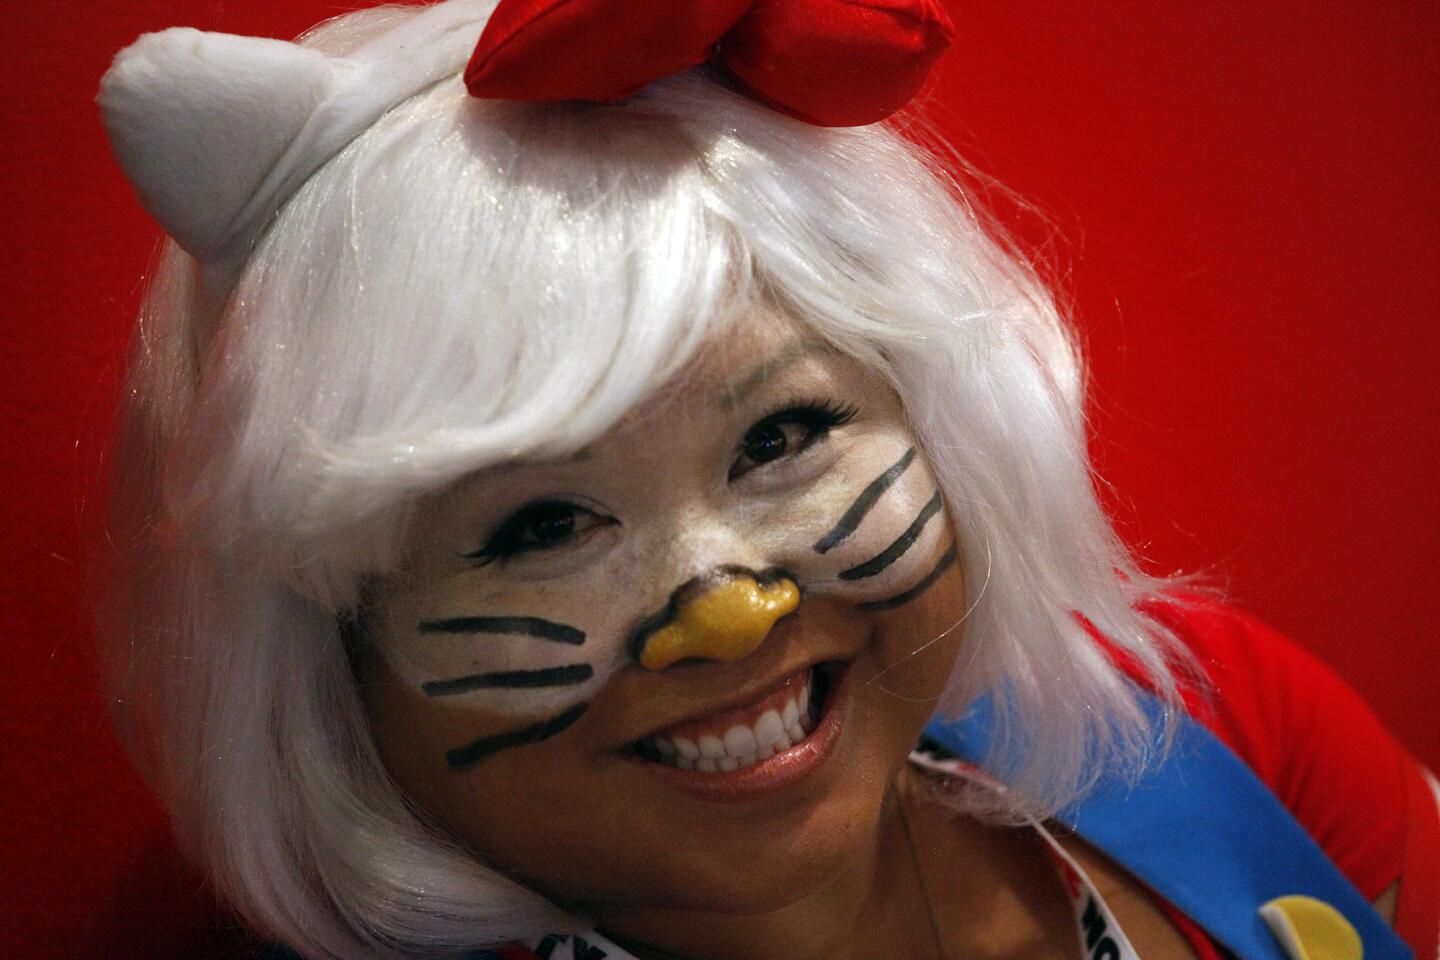 Hello Kitty Con